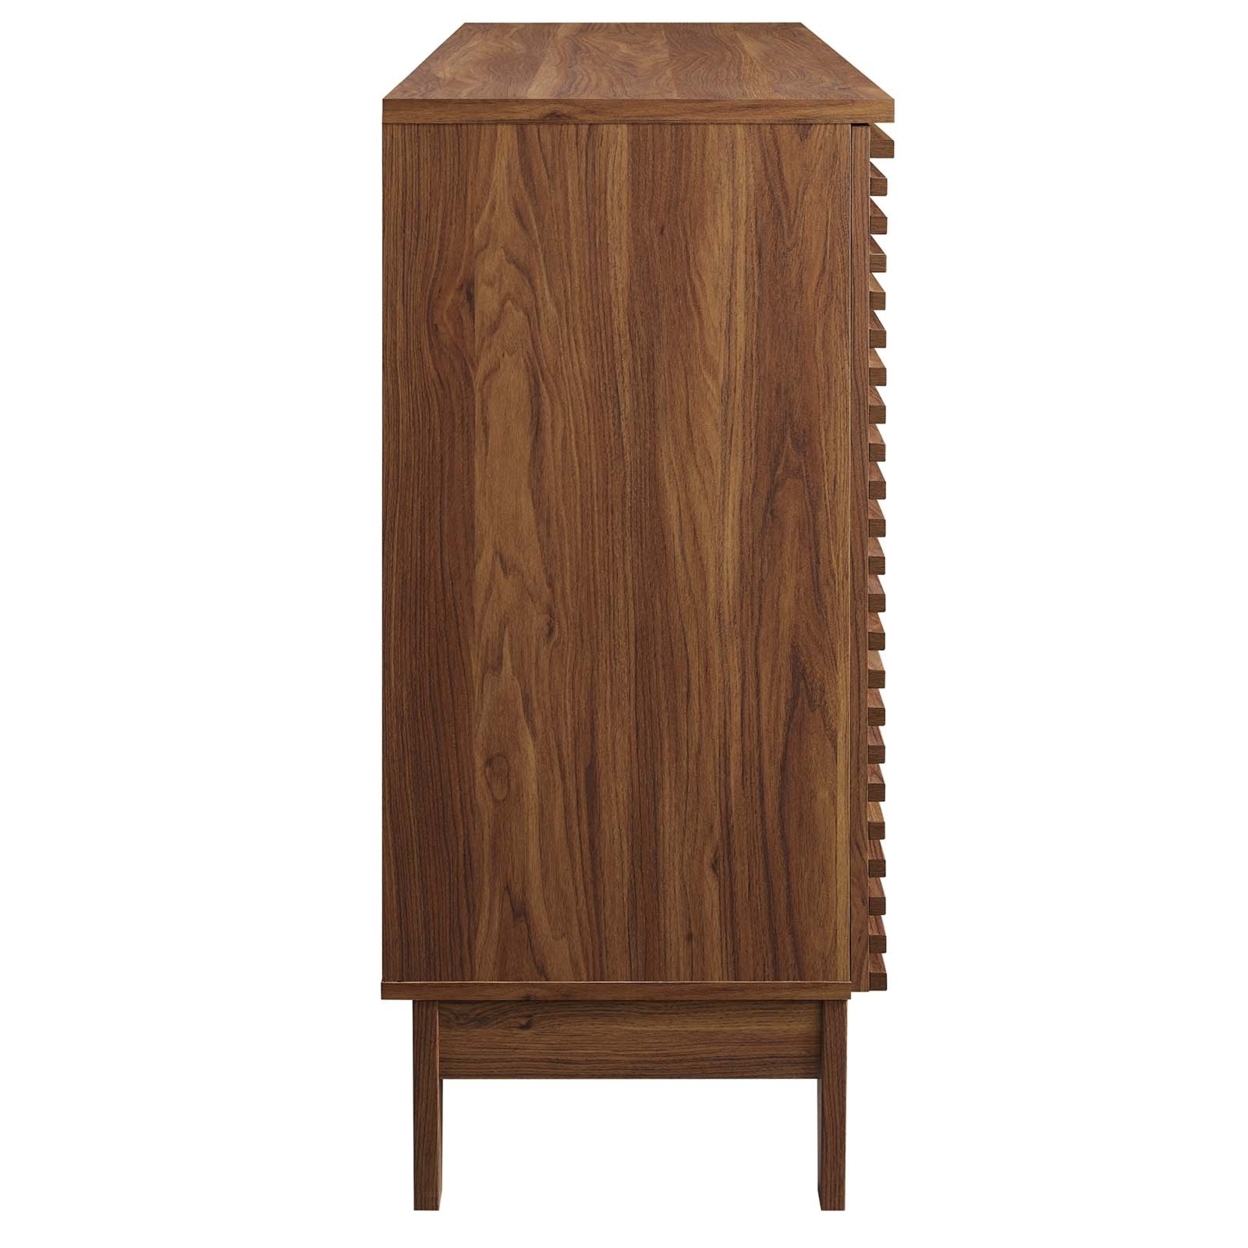 Wood Bar Cabinet, Slatted Door Design, 18 Cubbies, Walnut Brown